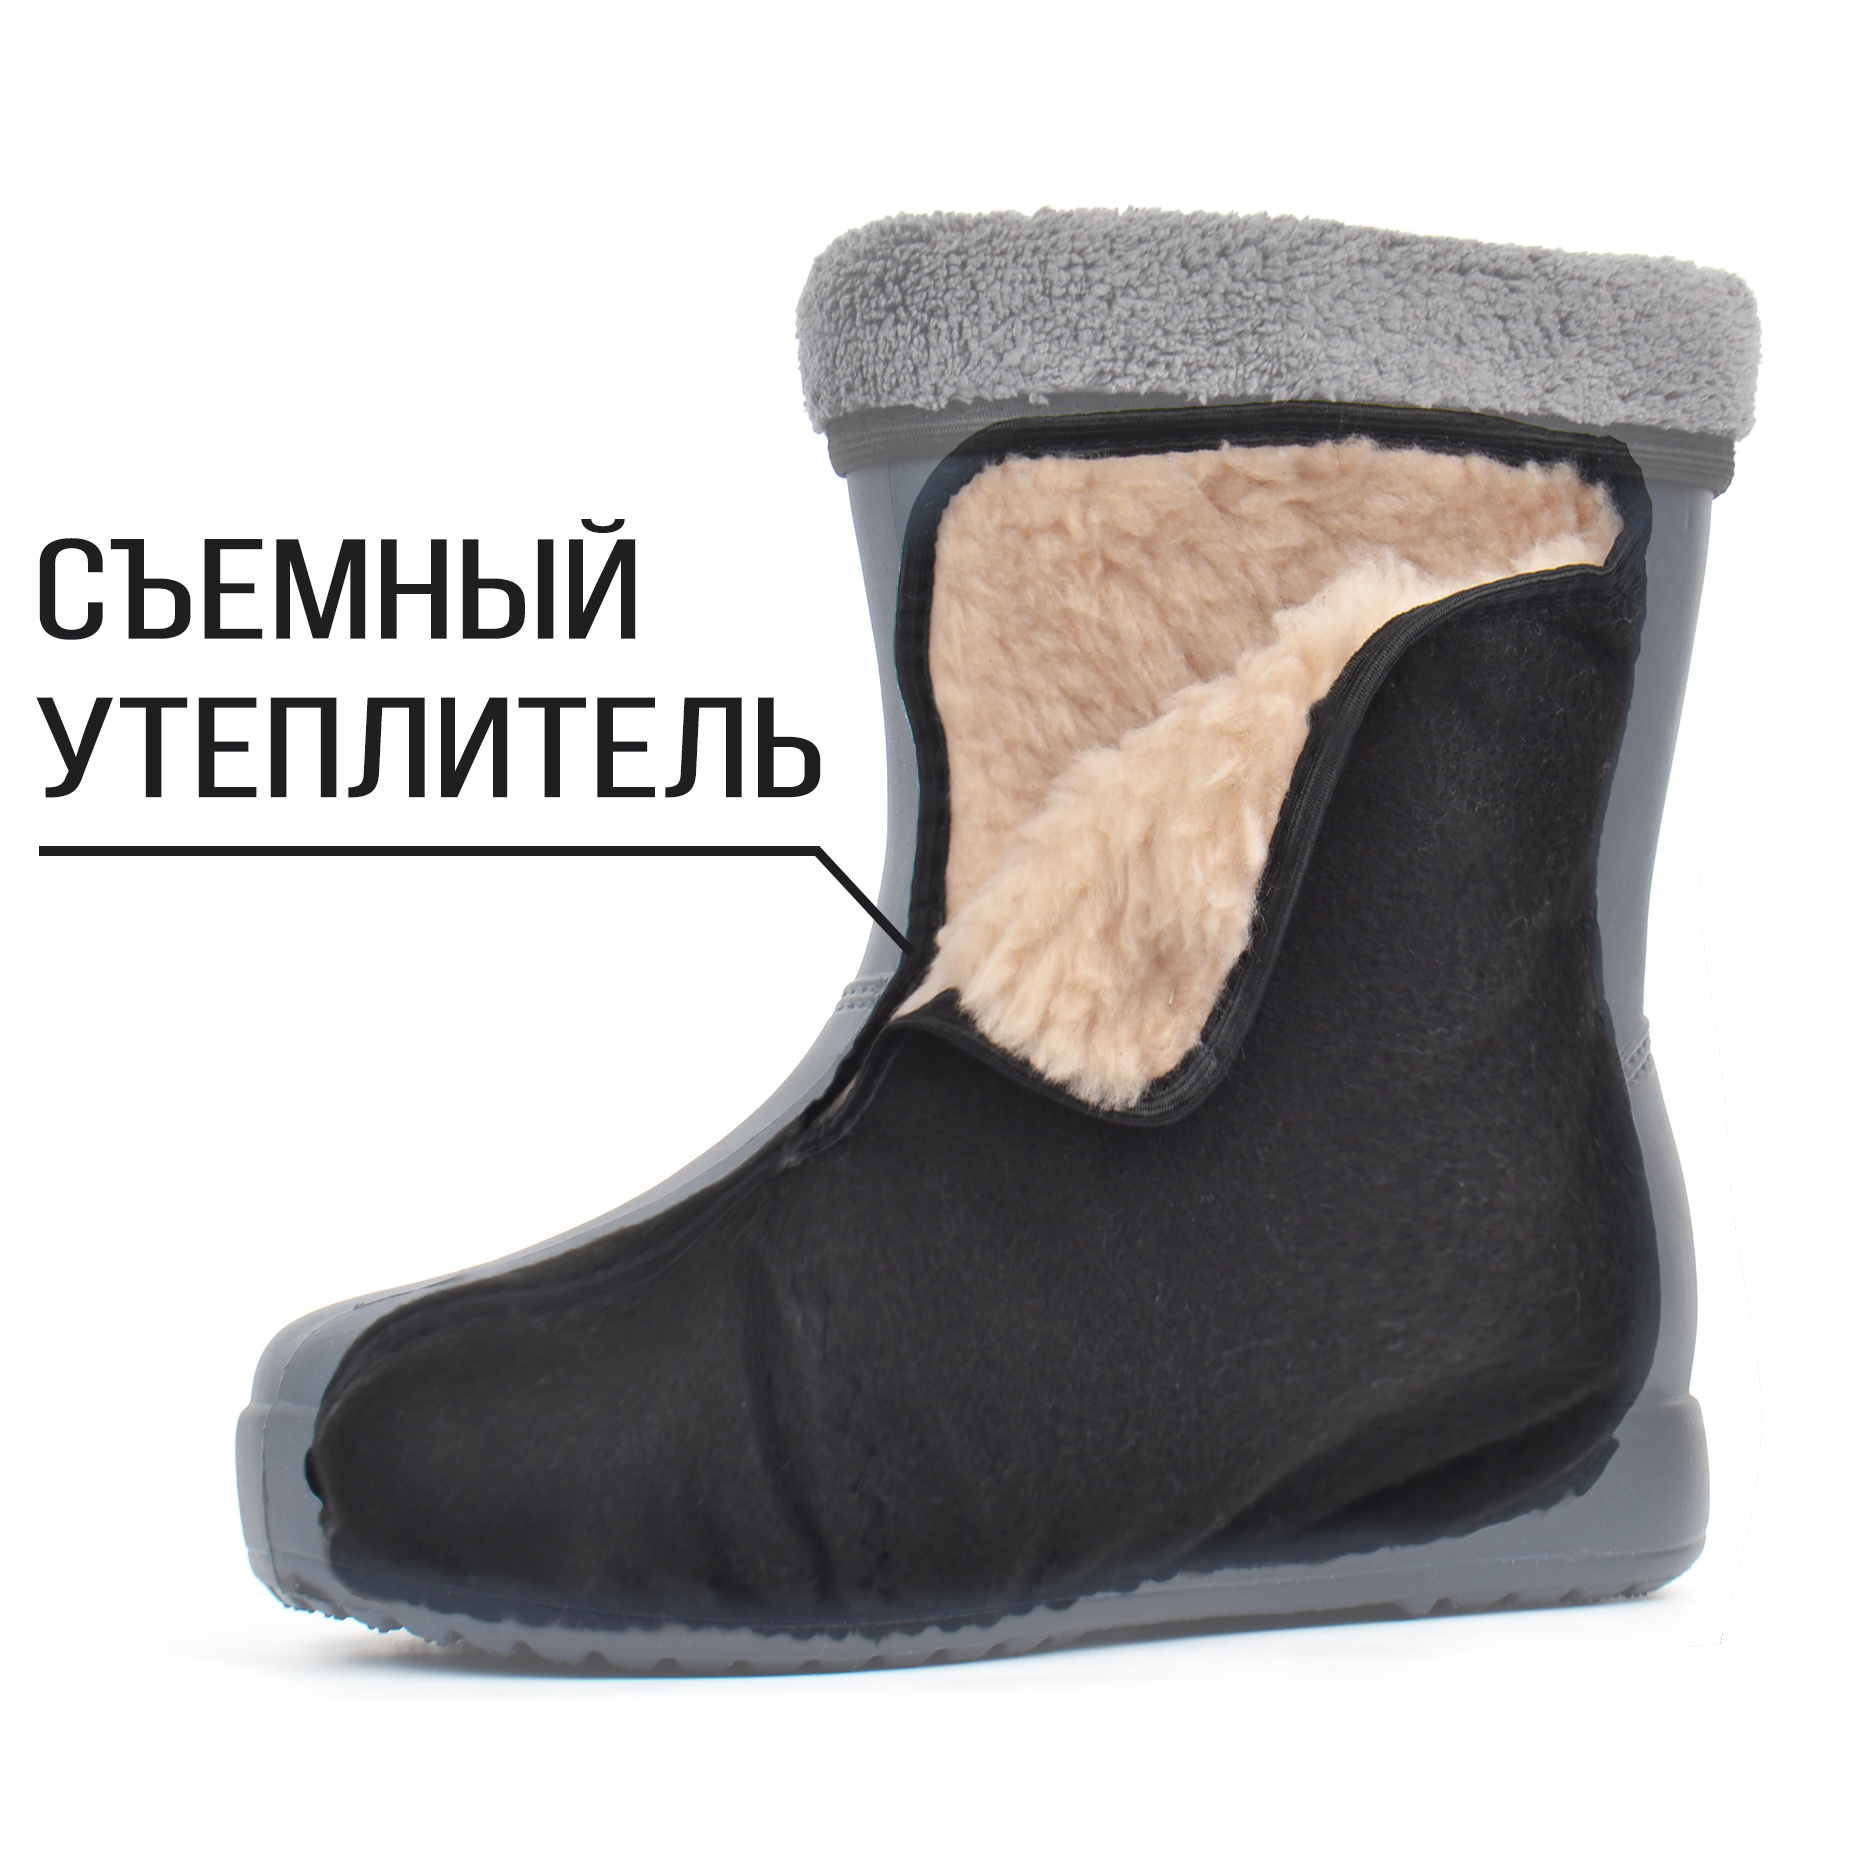 Обувь для слякоти на меху со съемным утеплителем Croc купить в Украине по супер цене